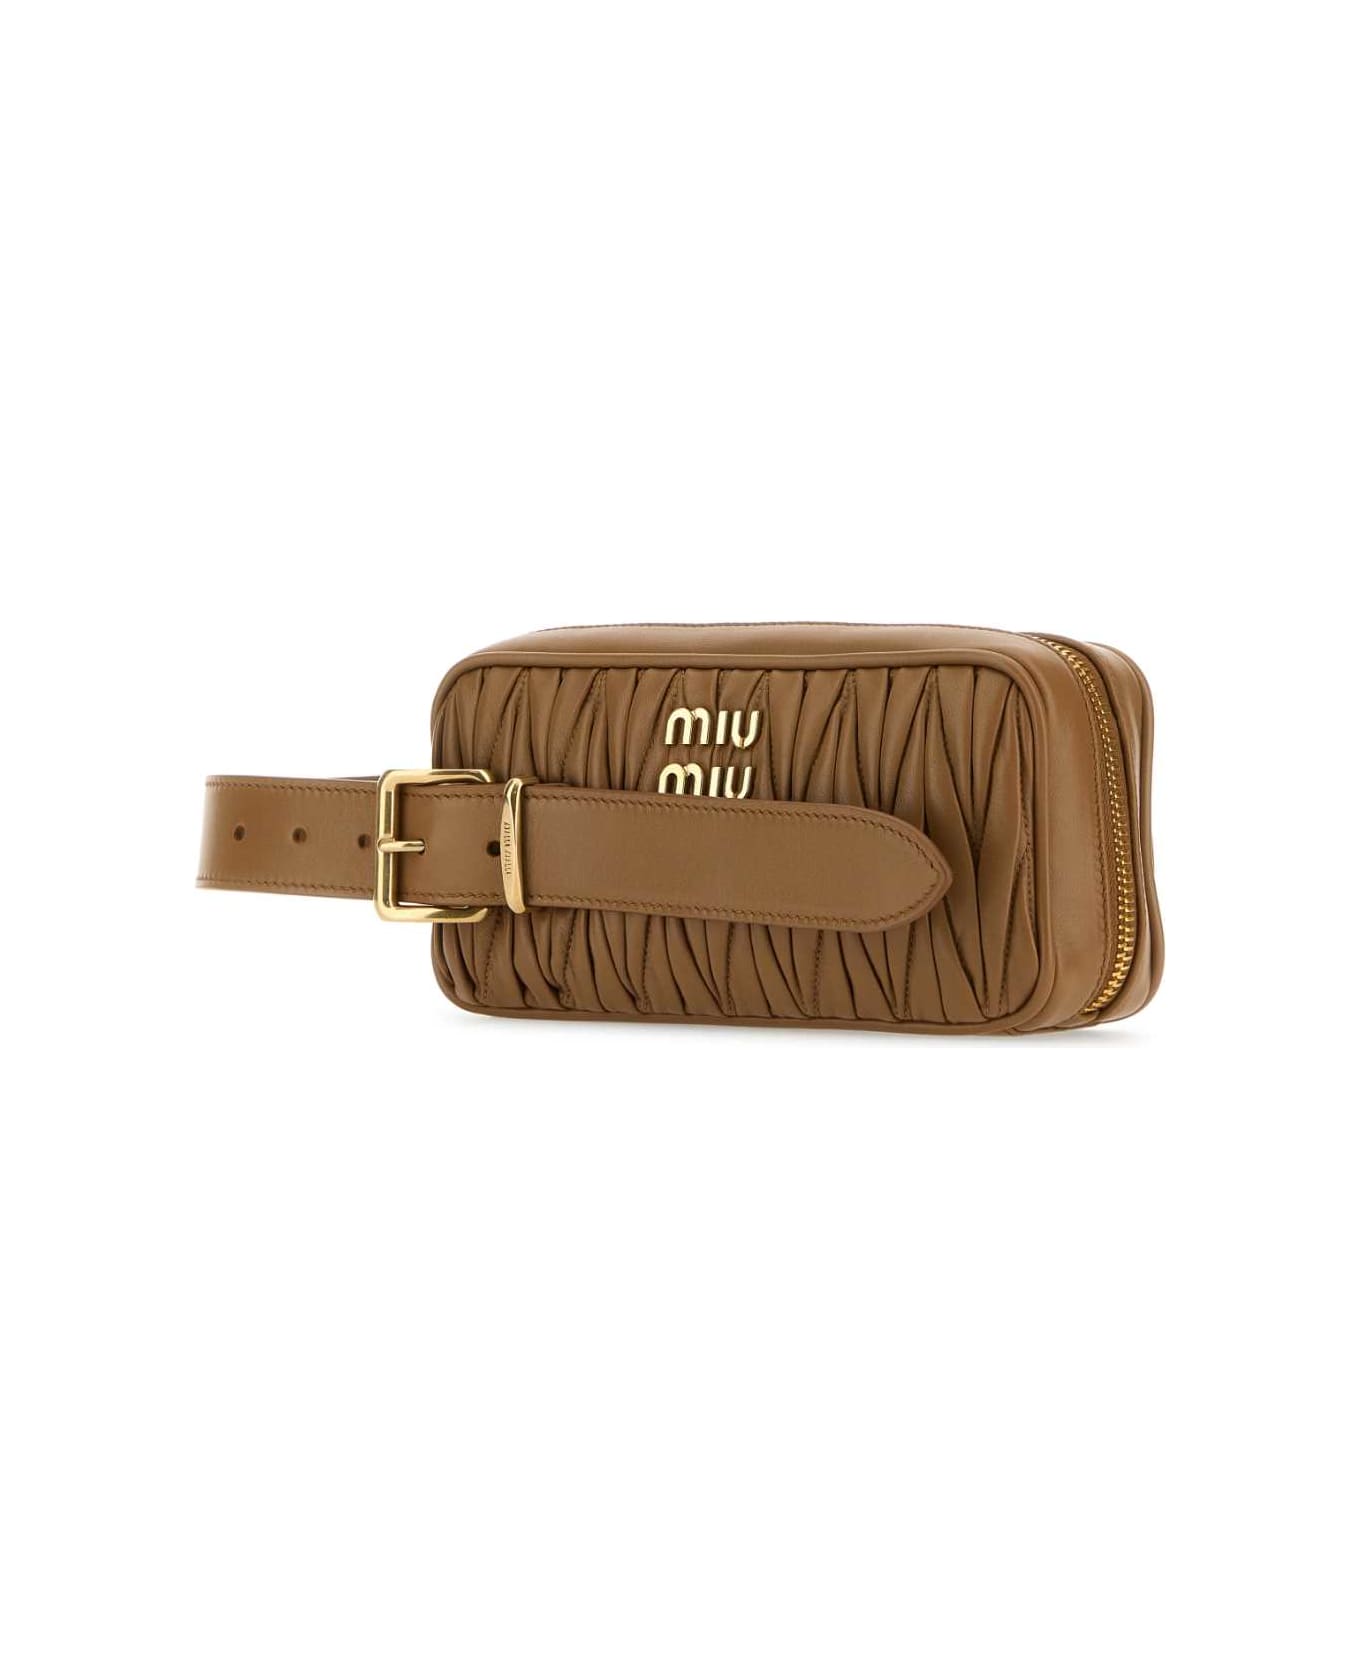 Miu Miu Biscuit Leather Clutch - CARAMEL ベルトバッグ